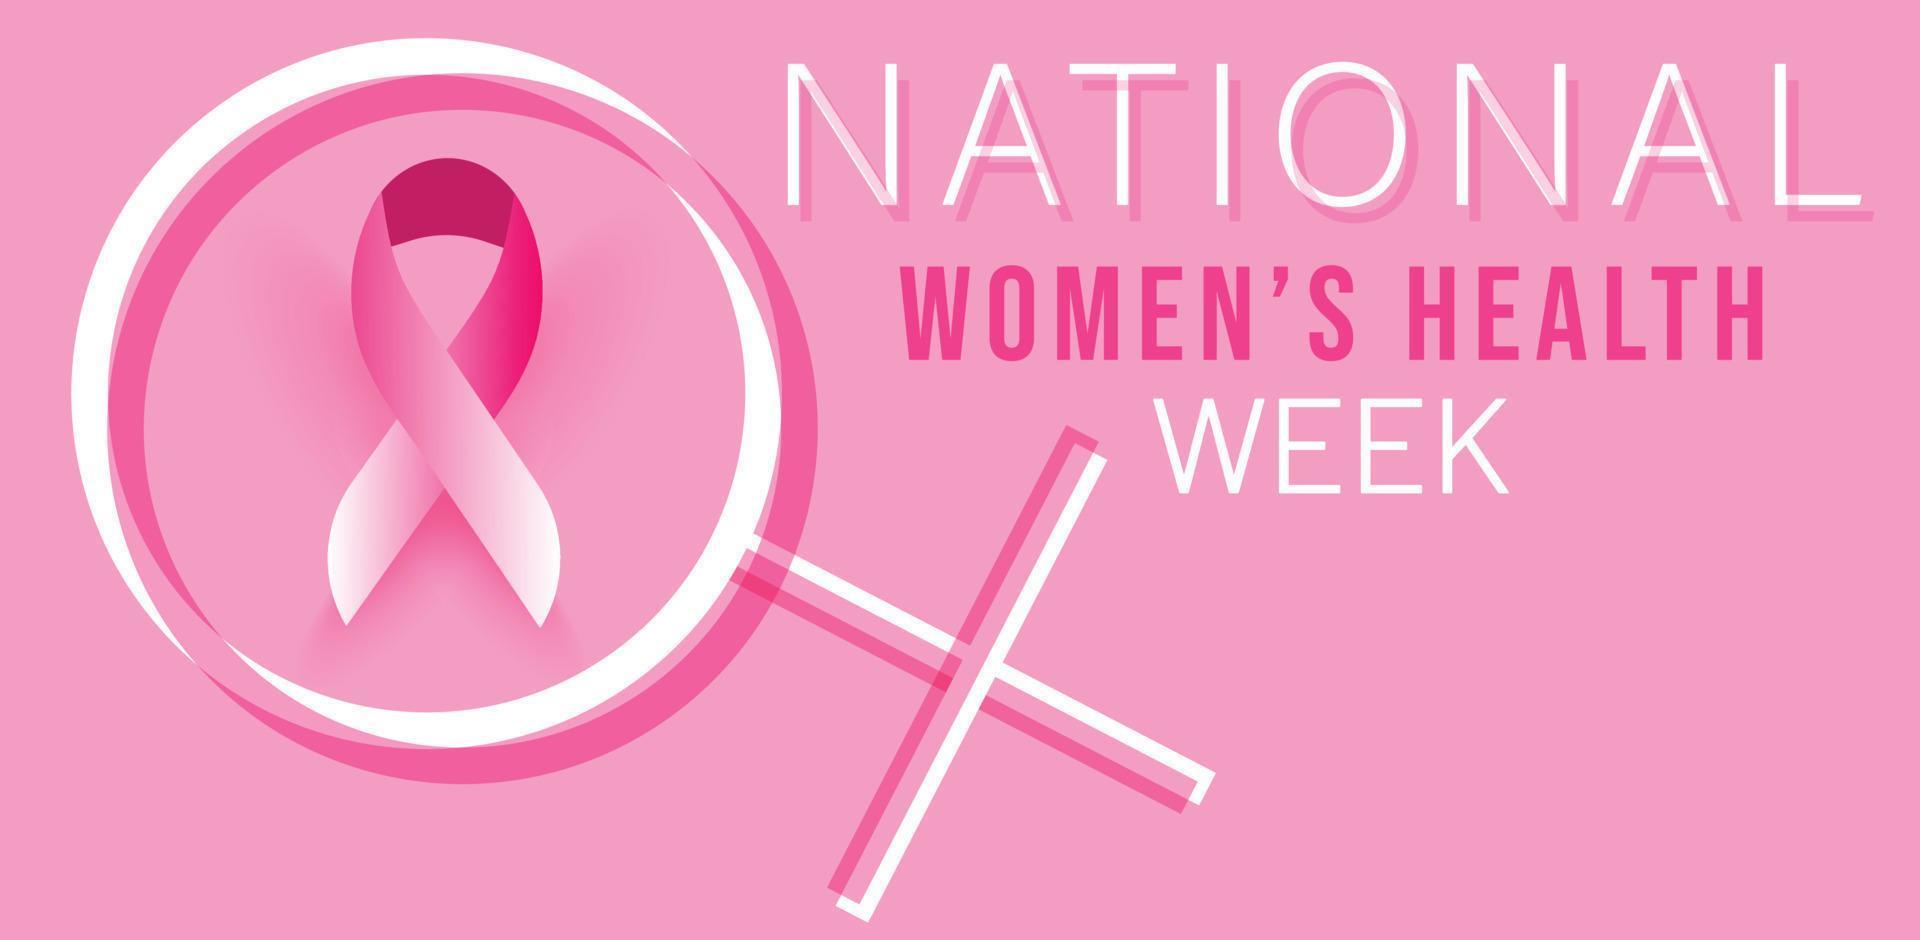 mayo es nacional De las mujeres salud semana. modelo para fondo, bandera, tarjeta, póster. vector ilustración.